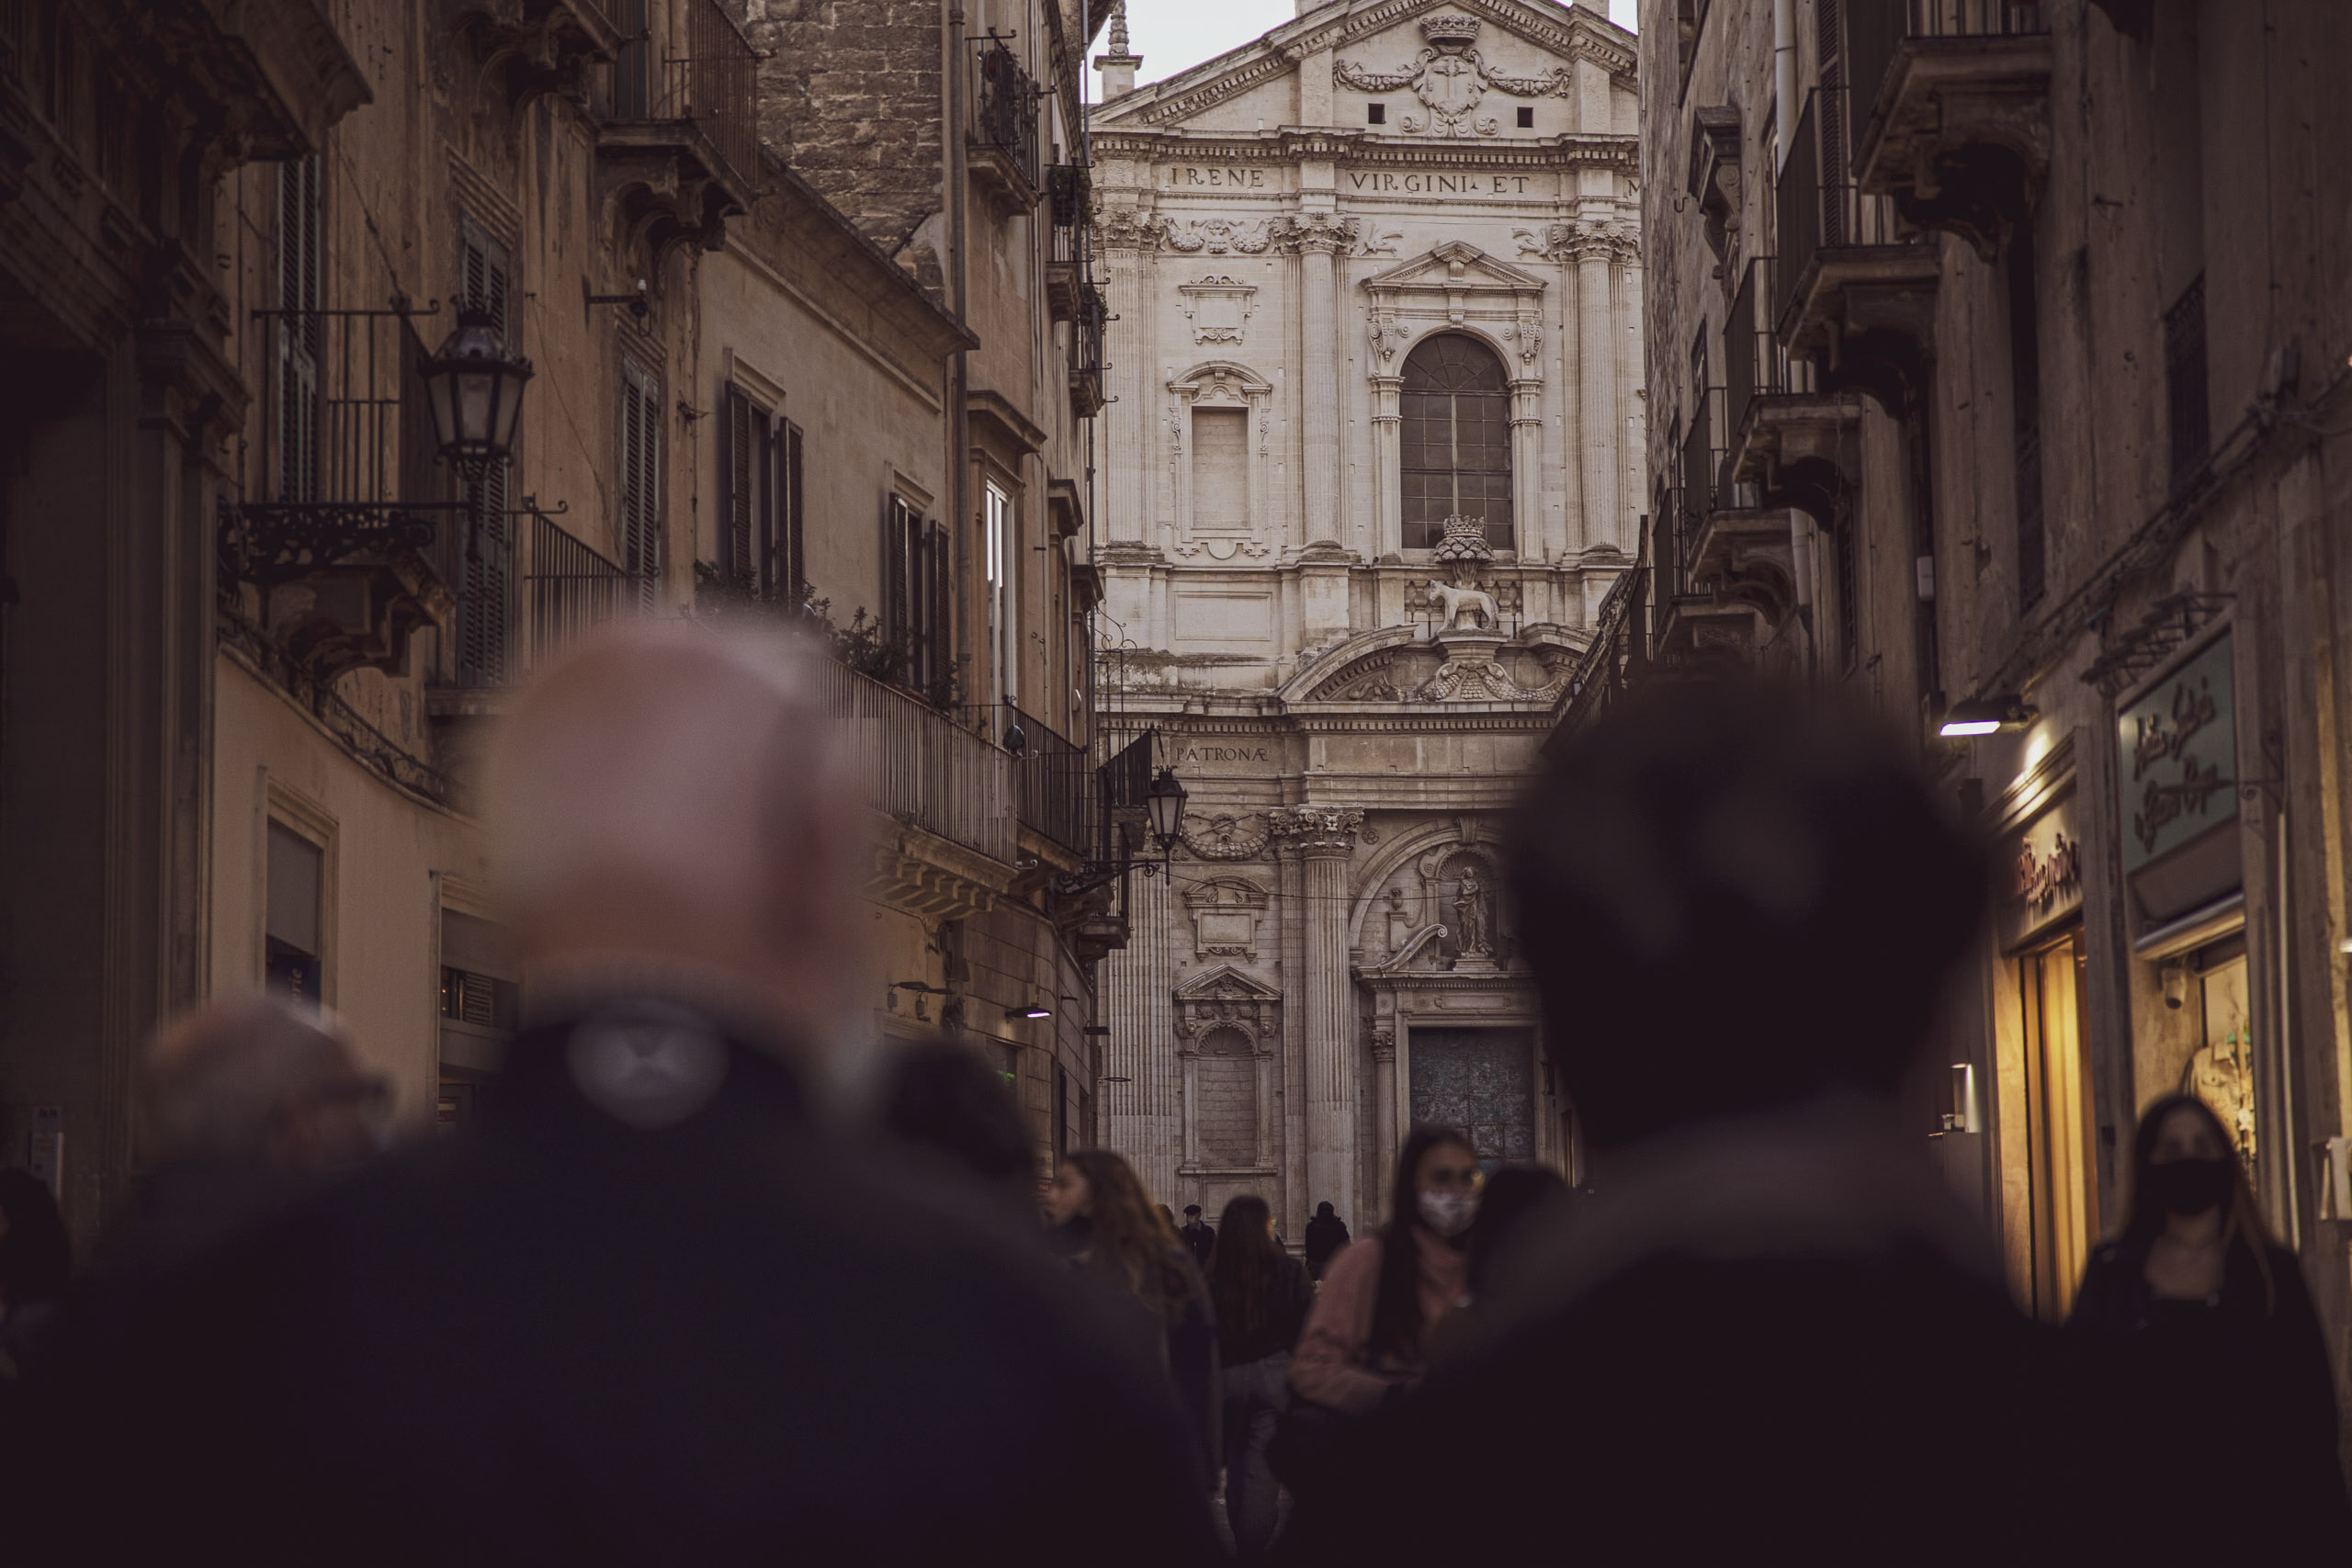 Blick auf eine belebte Straße, die zu einer historischen Kirche mit einer detailreichen Fassade führt. Menschen mit Masken gehen entlang, was auf Vorsichtsmaßnahmen gegen die Pandemie hinweist. Die Szene fängt eine Mischung aus Architektur und Alltag ein. © Fotografie Tomas Rodriguez